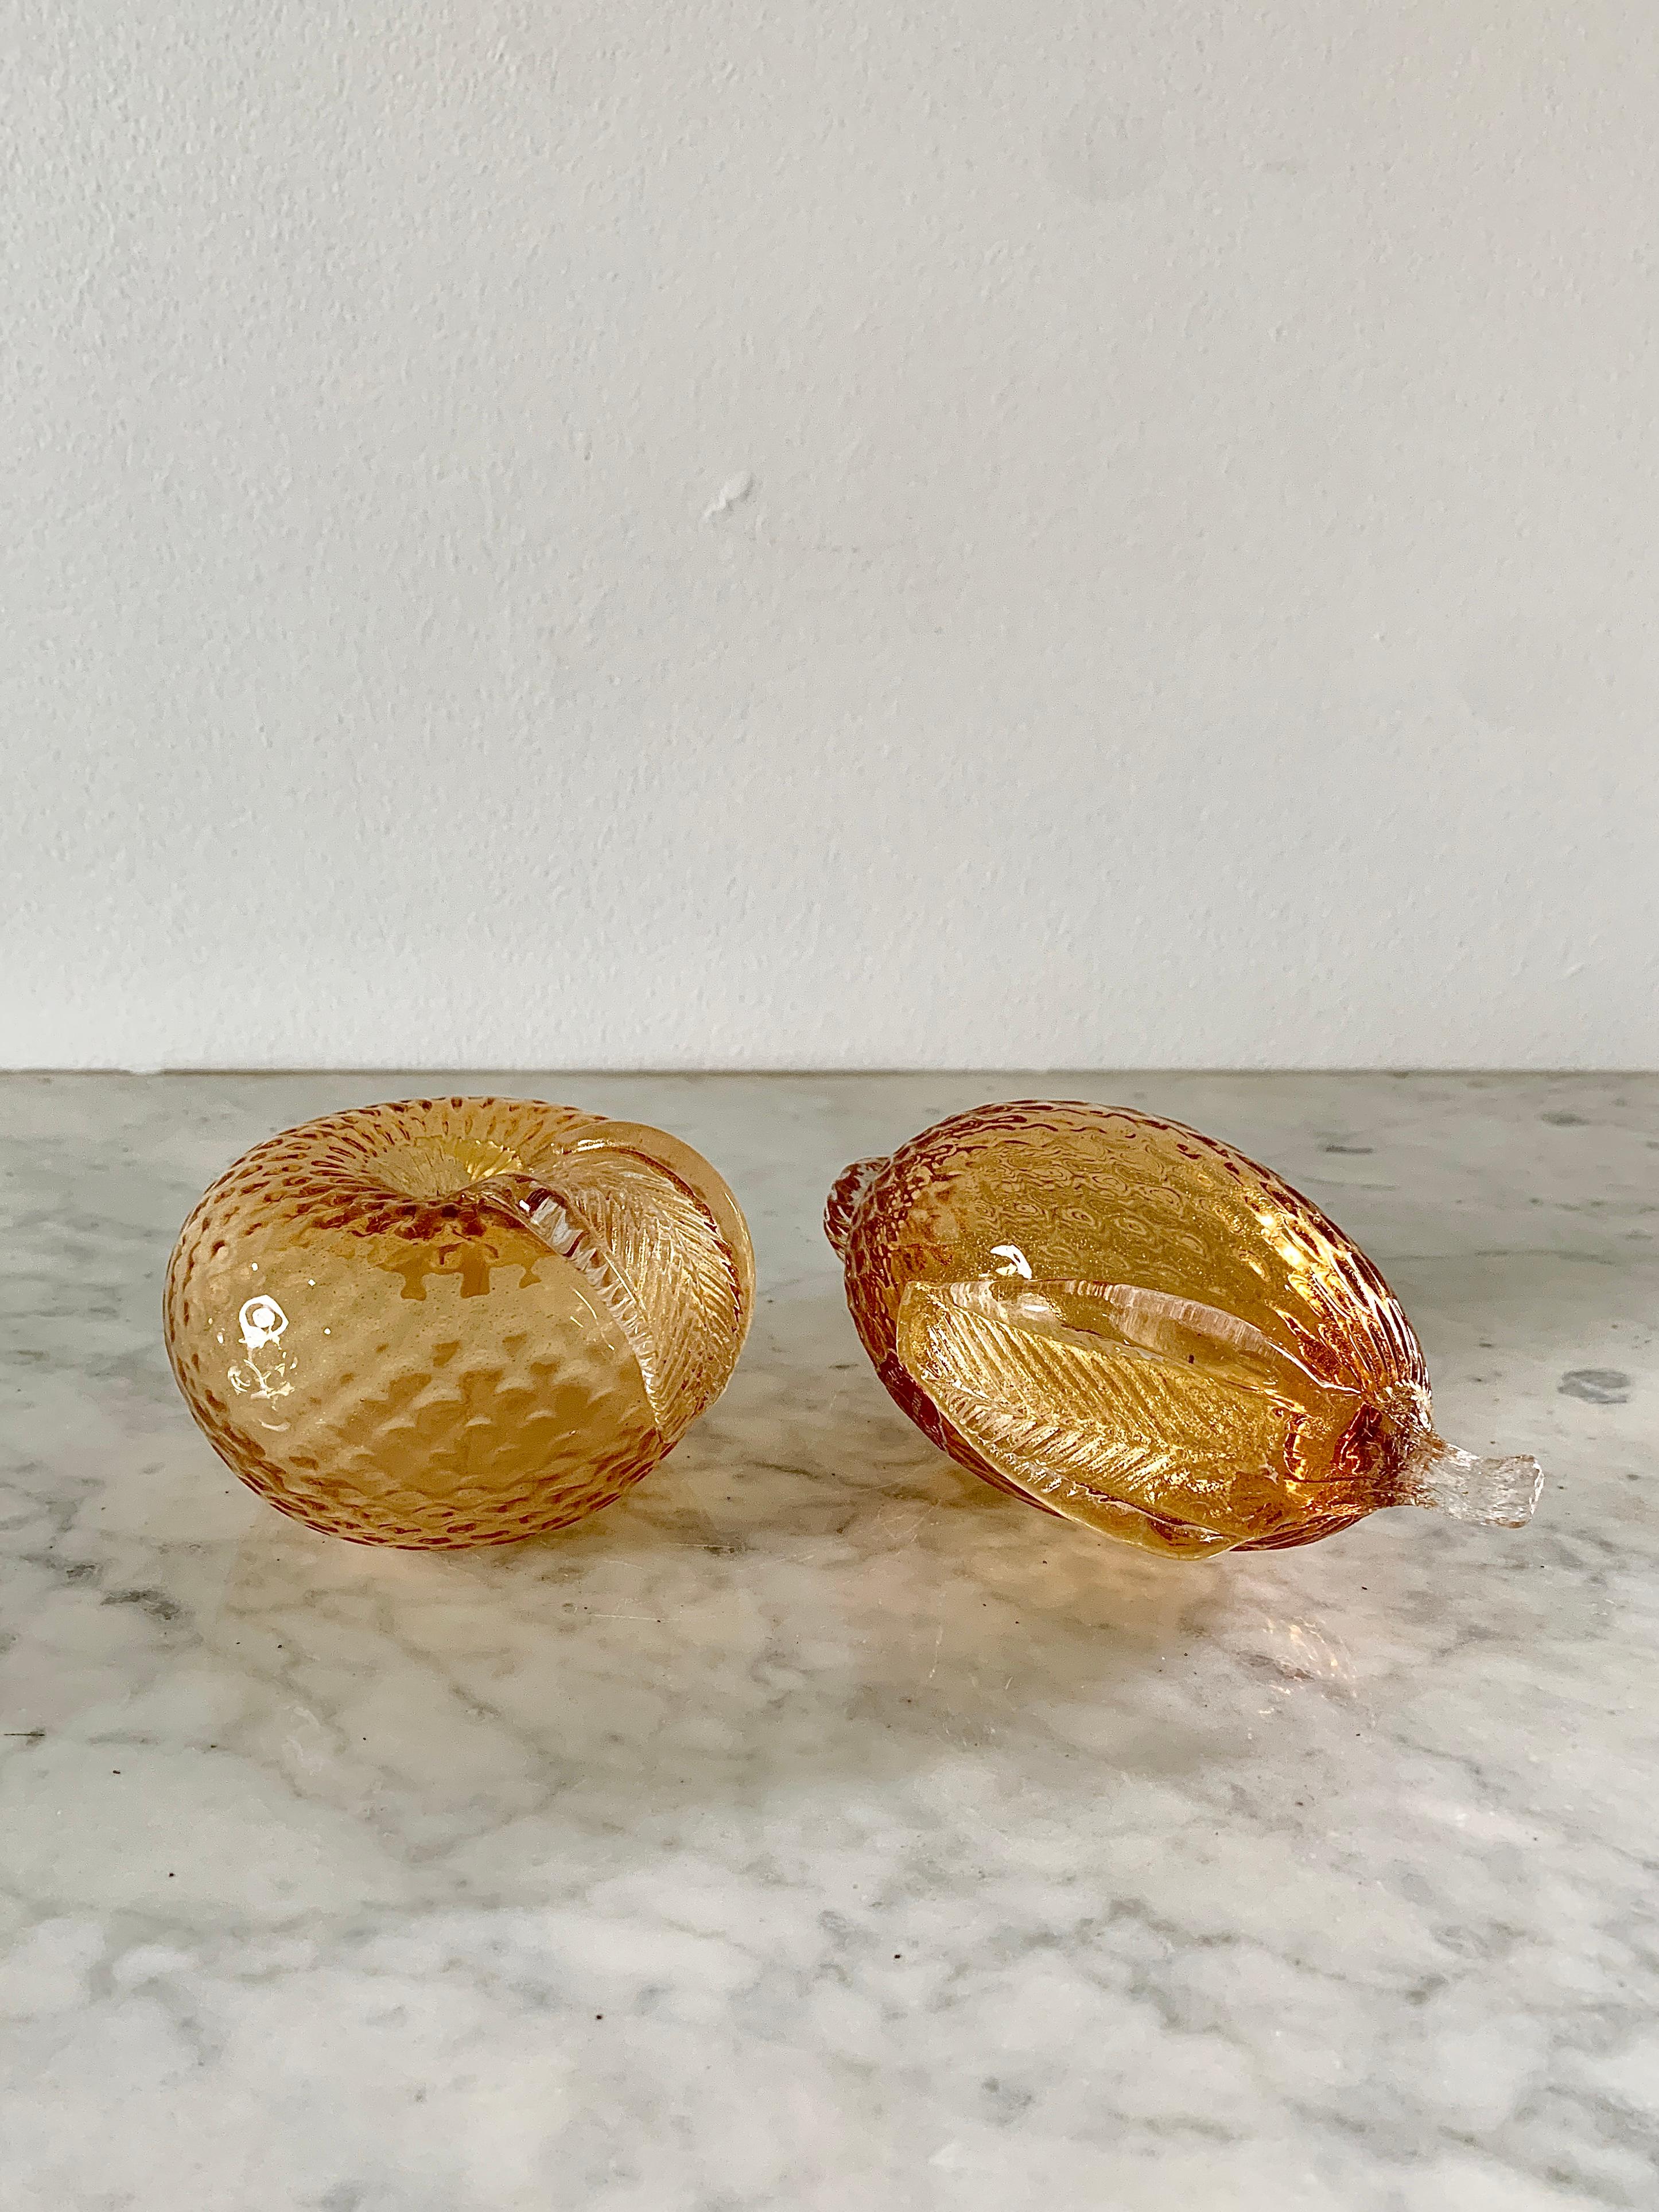 Une belle paire de fruits en verre de Murano de couleur orange comprenant une pomme et un citron

Italie, Circa 1970

La pomme mesure : 4 